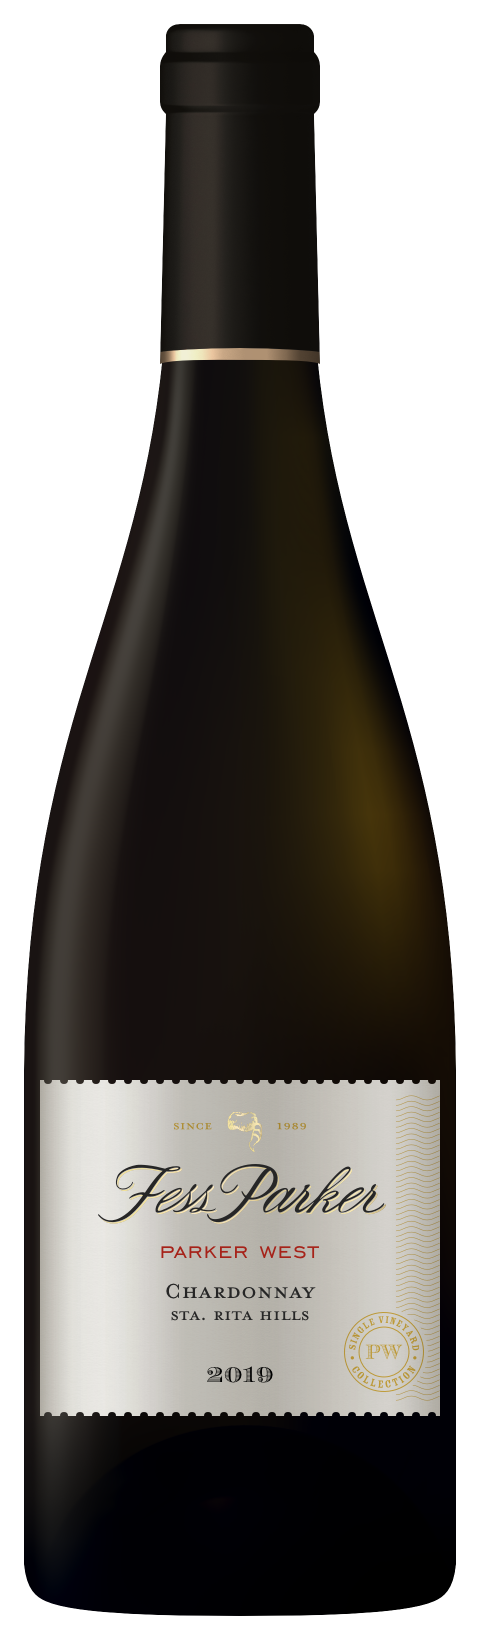 Bottle shot of Parker West Chardonnay